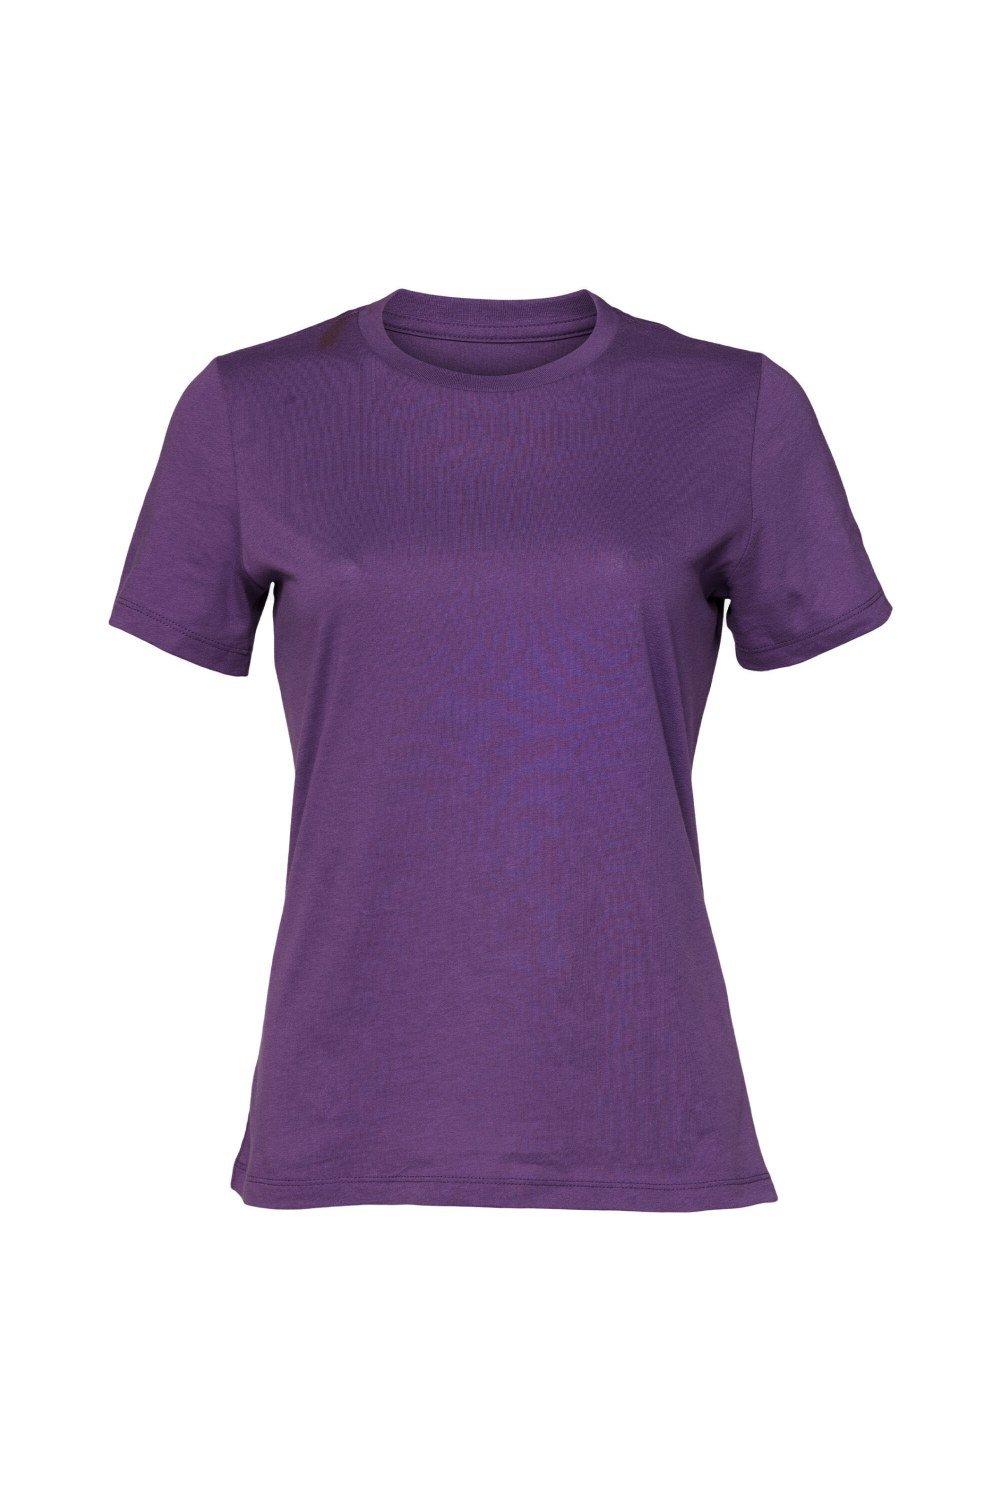 Футболка из джерси с короткими рукавами Bella + Canvas, фиолетовый молодежная футболка из джерси с короткими рукавами bella canvas синий